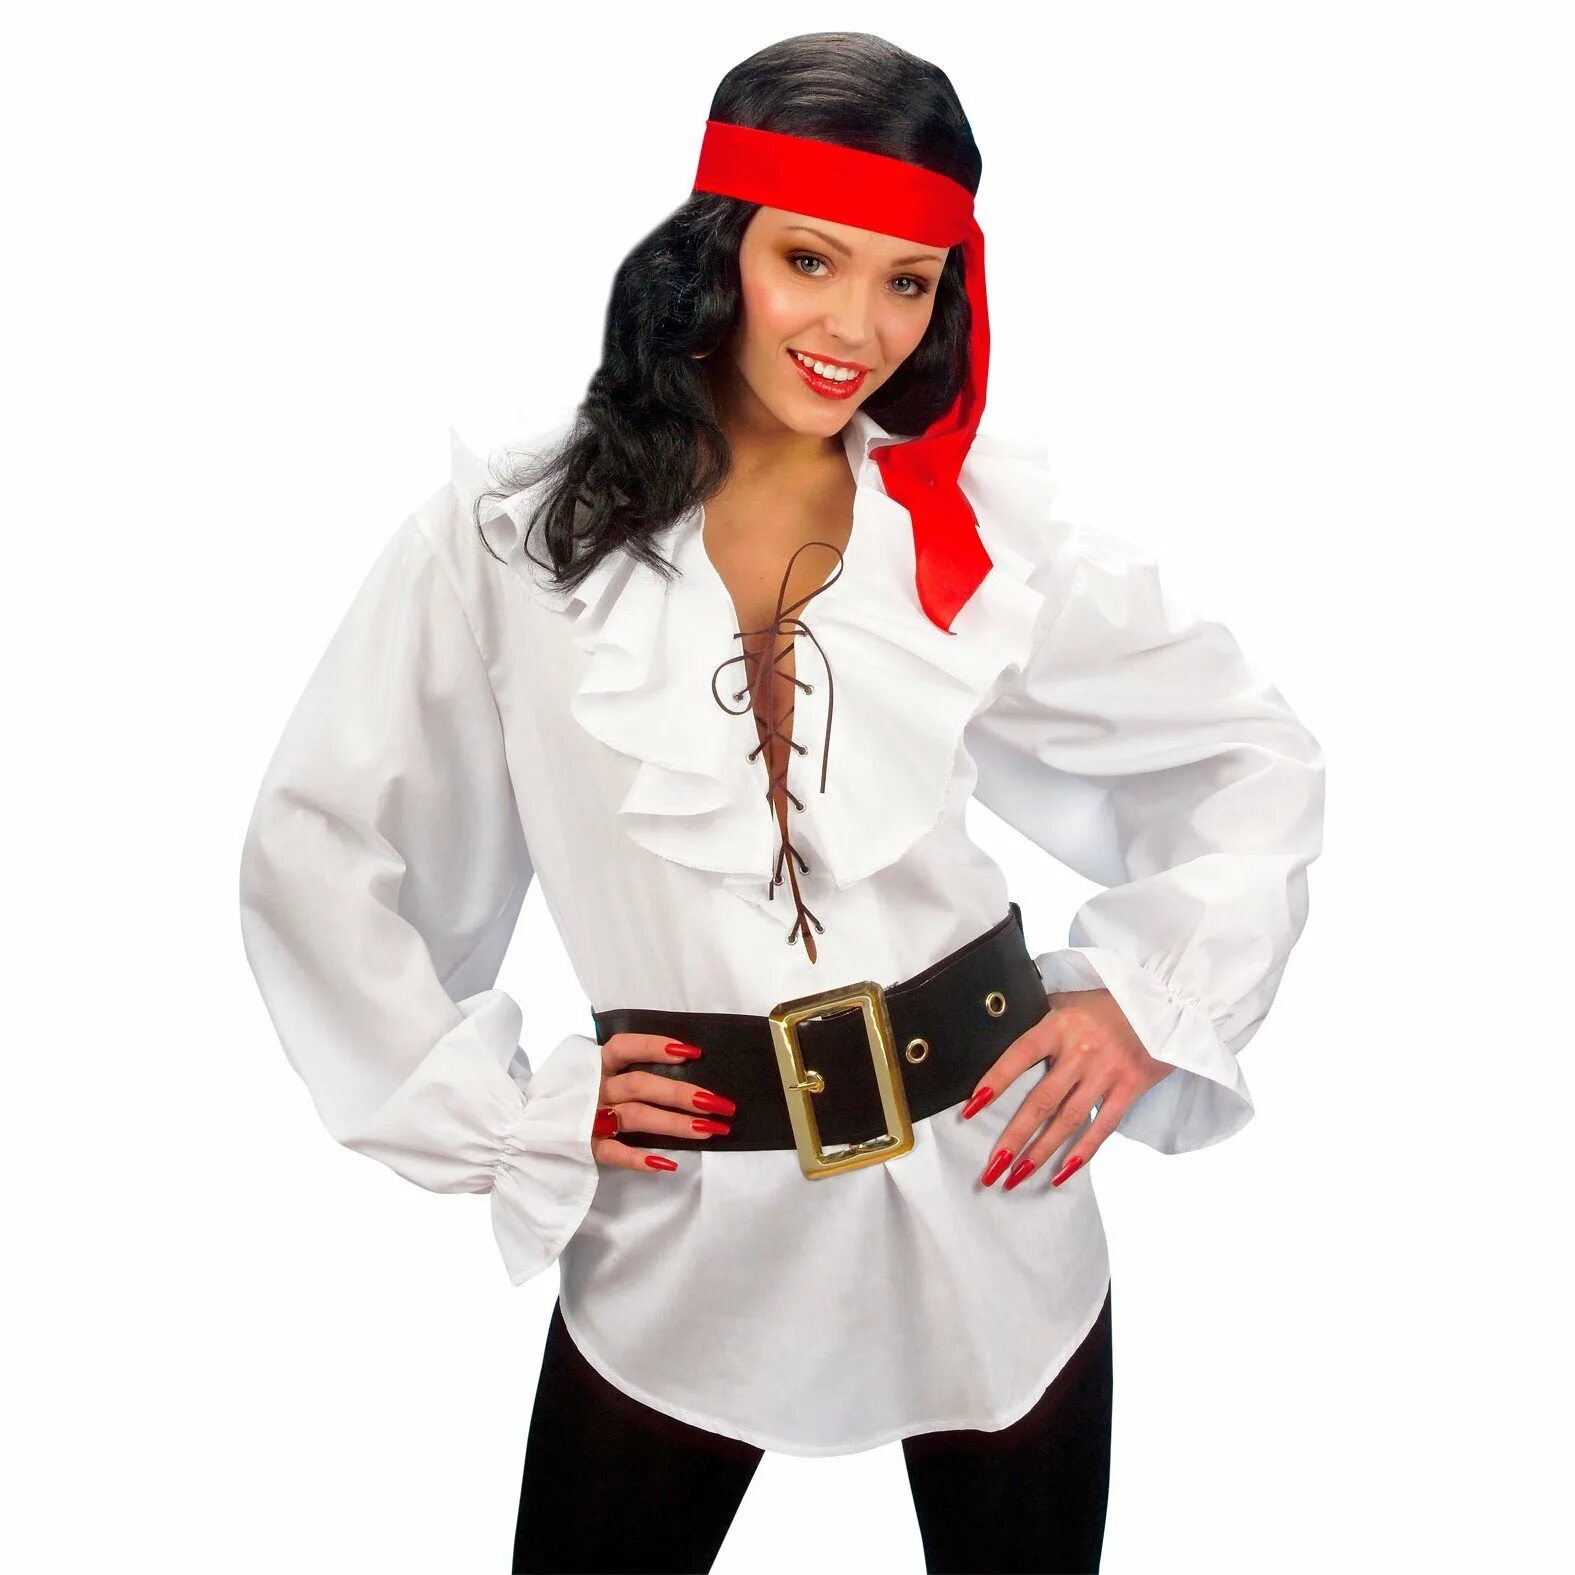 Пират костюм. Костюм пиратки для женщины. Пиратская вечеринка костюмы. Пиратская вечеринка костюмы взрослый. Образ на пиратскую вечеринку.